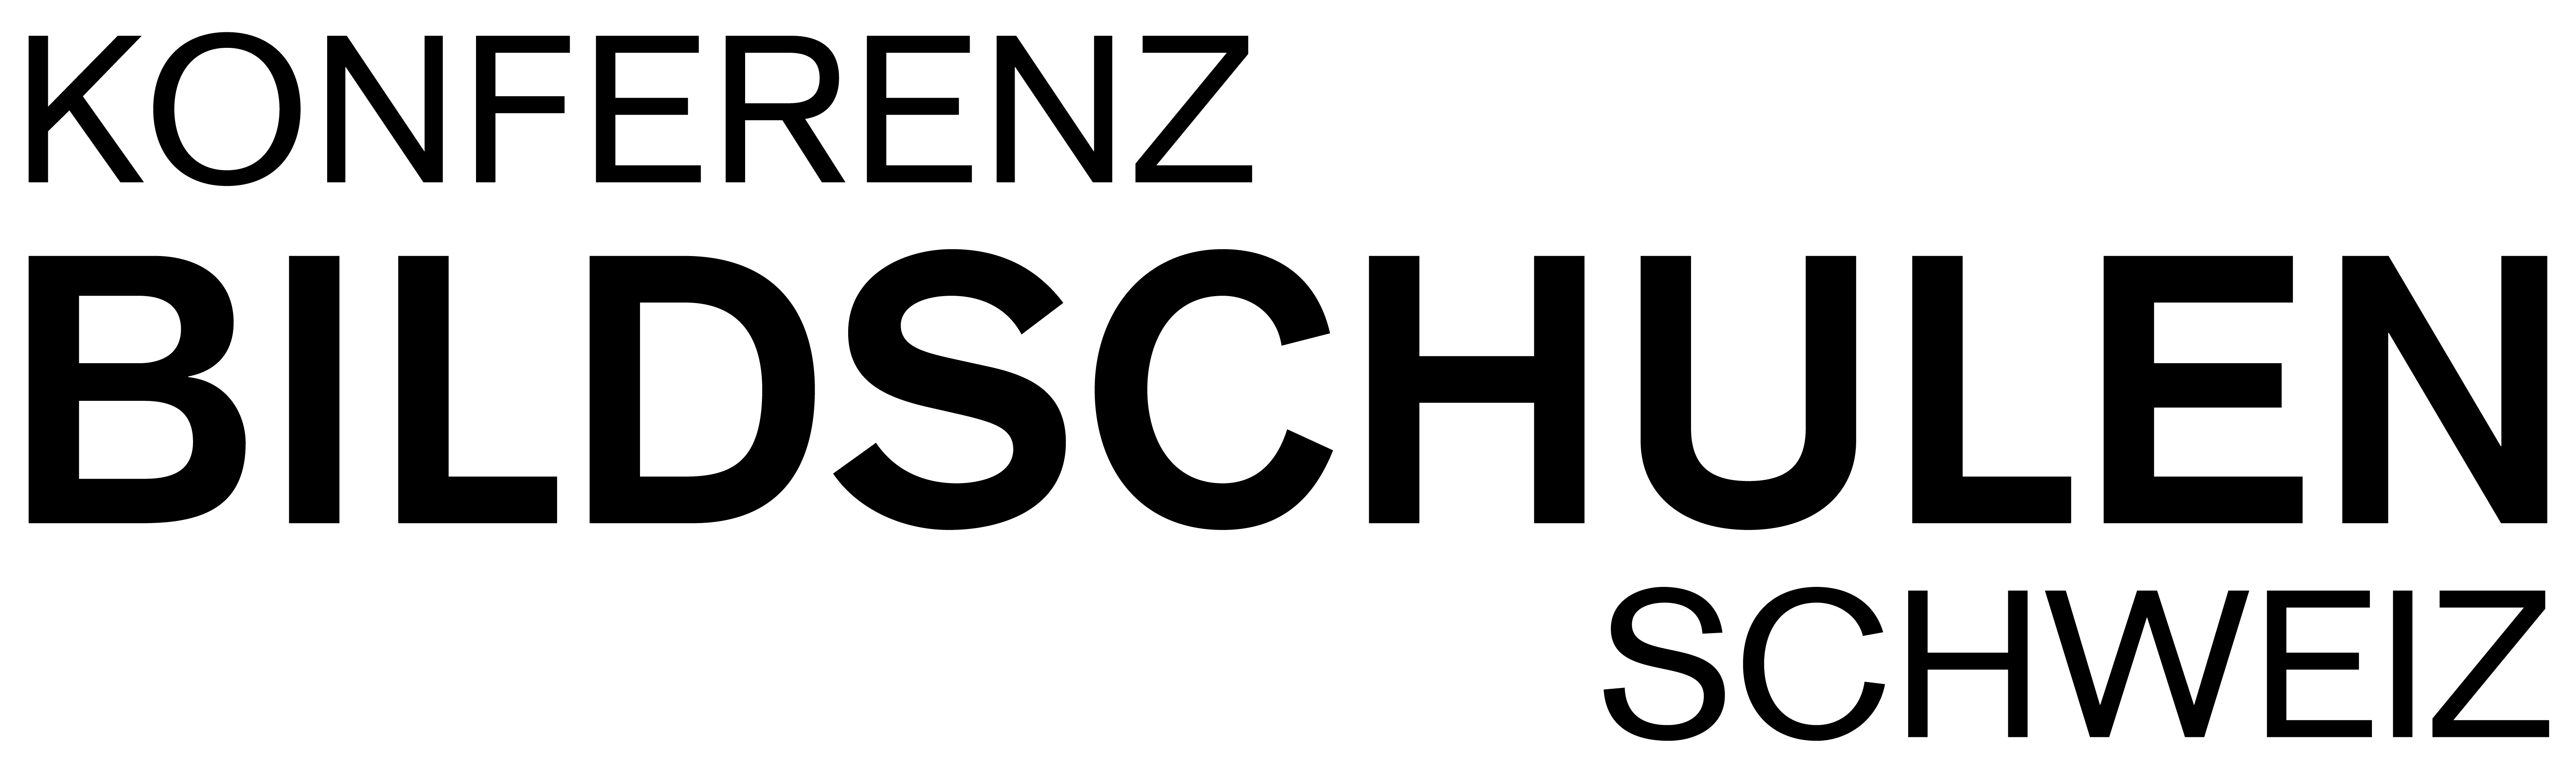 Konferenz Bildschulen Schweiz